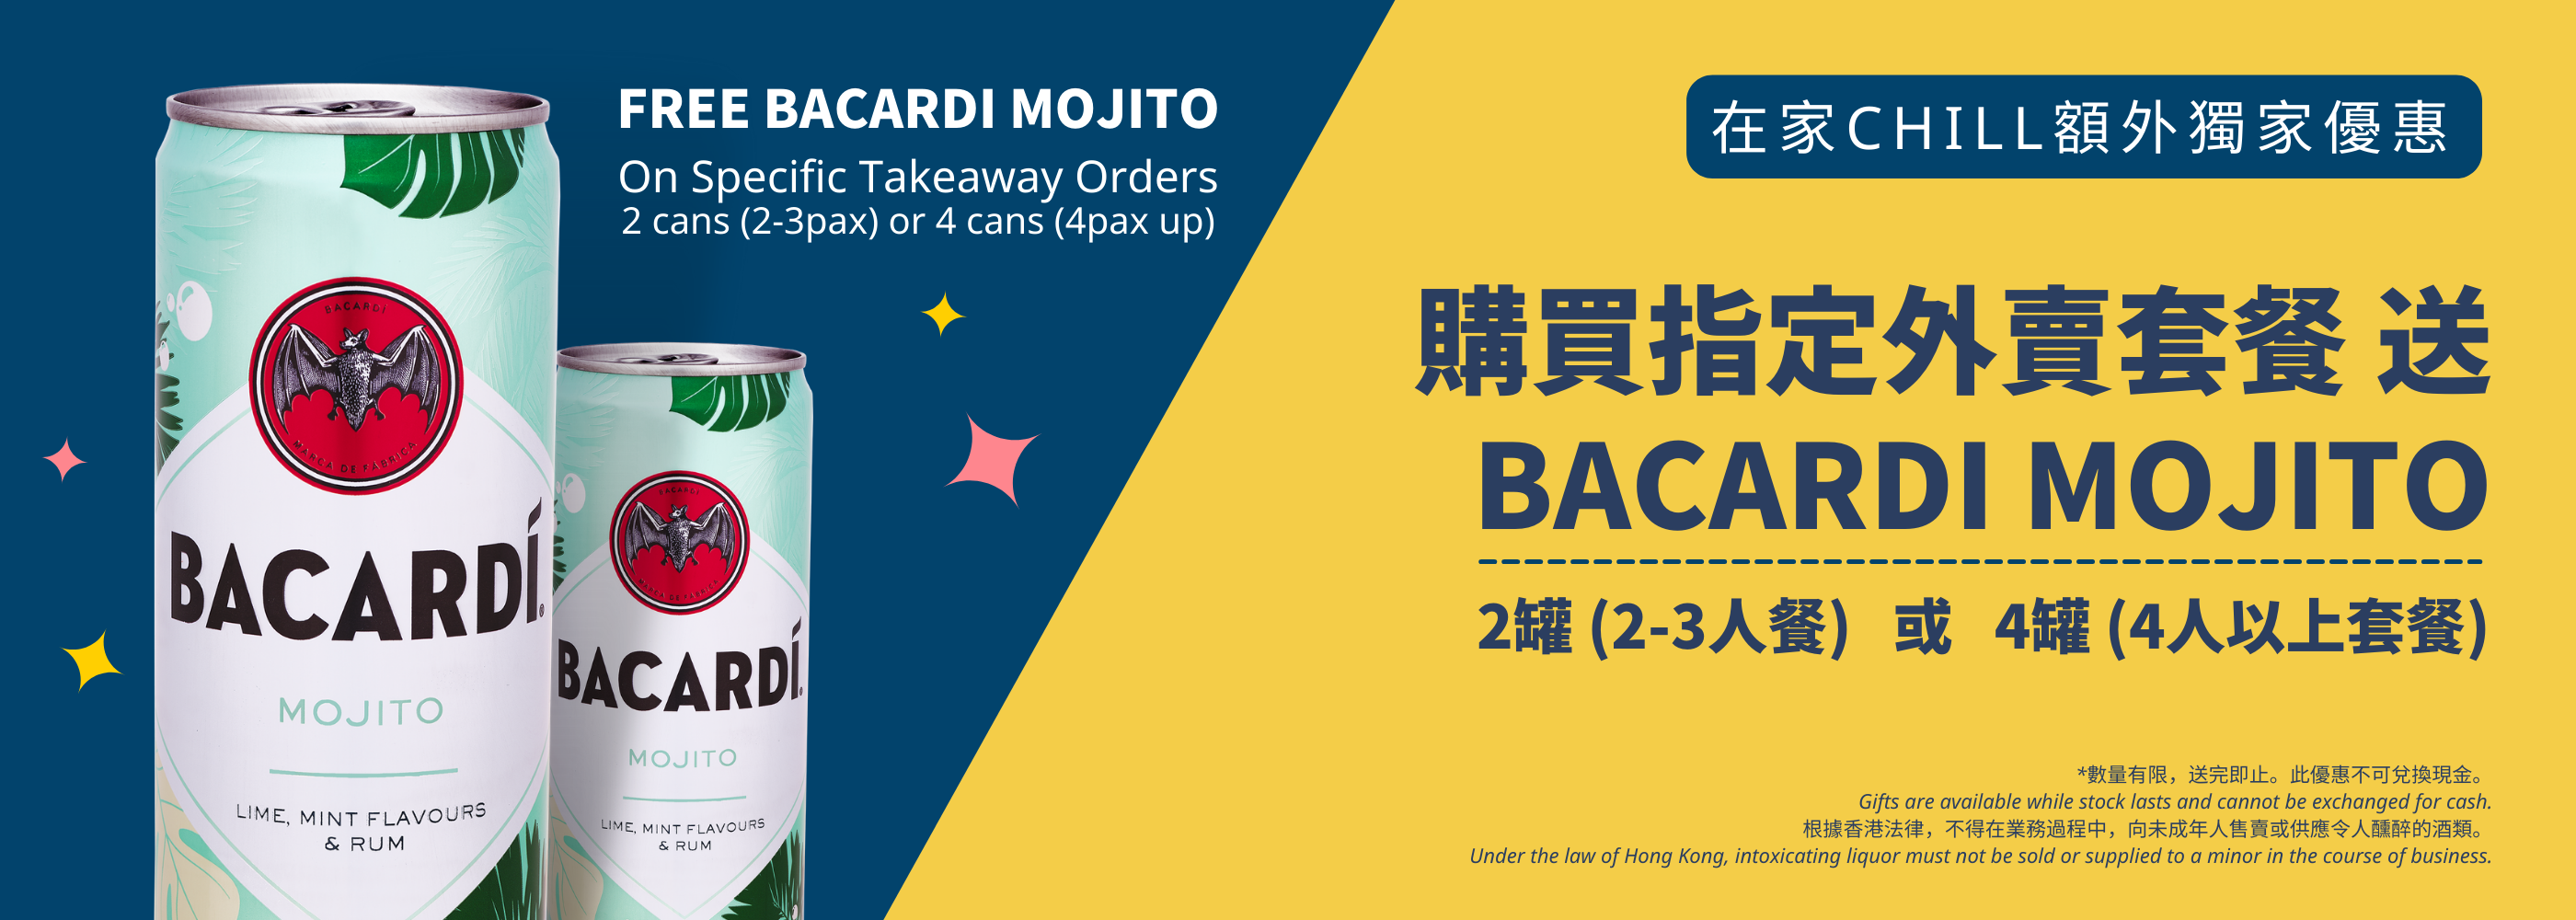 Free Bacardi Mojito